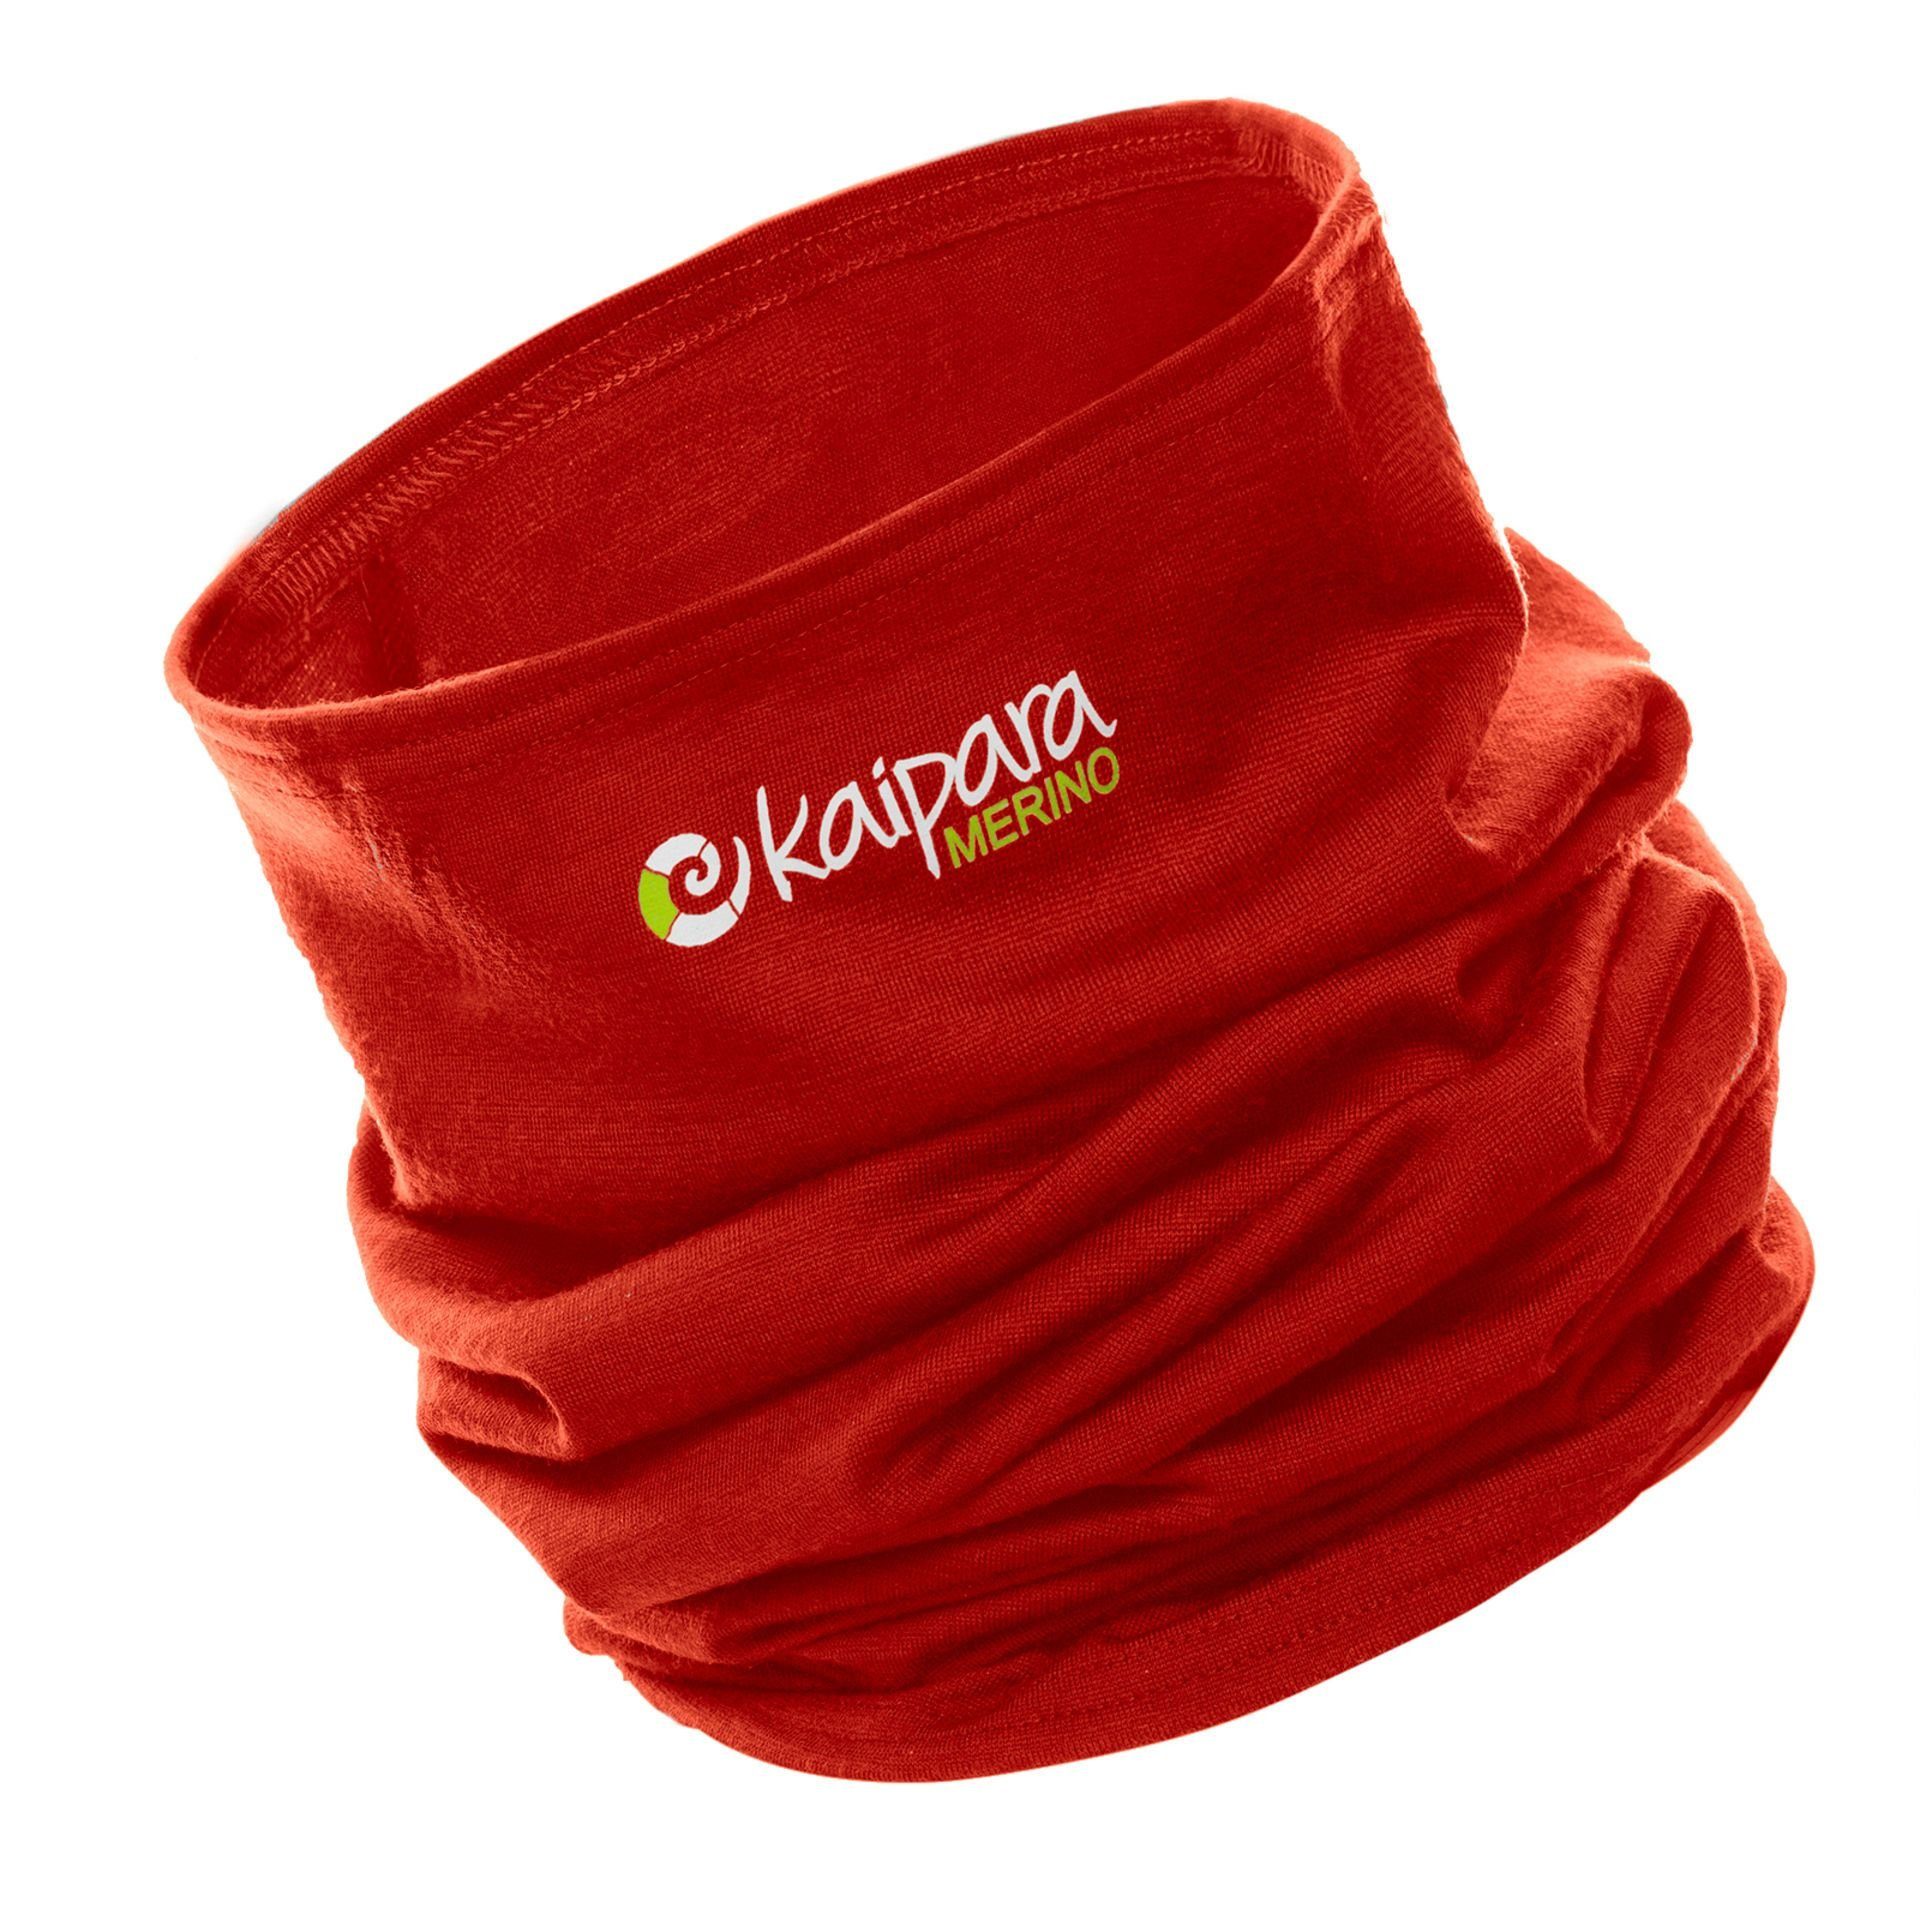 Informationen zu Rabatten im Versandhandel Kaipara - Sportswear 150, Schal reiner Merino aus Merinowolle Bandana Merino Cherry Germany Made Unisex Red in